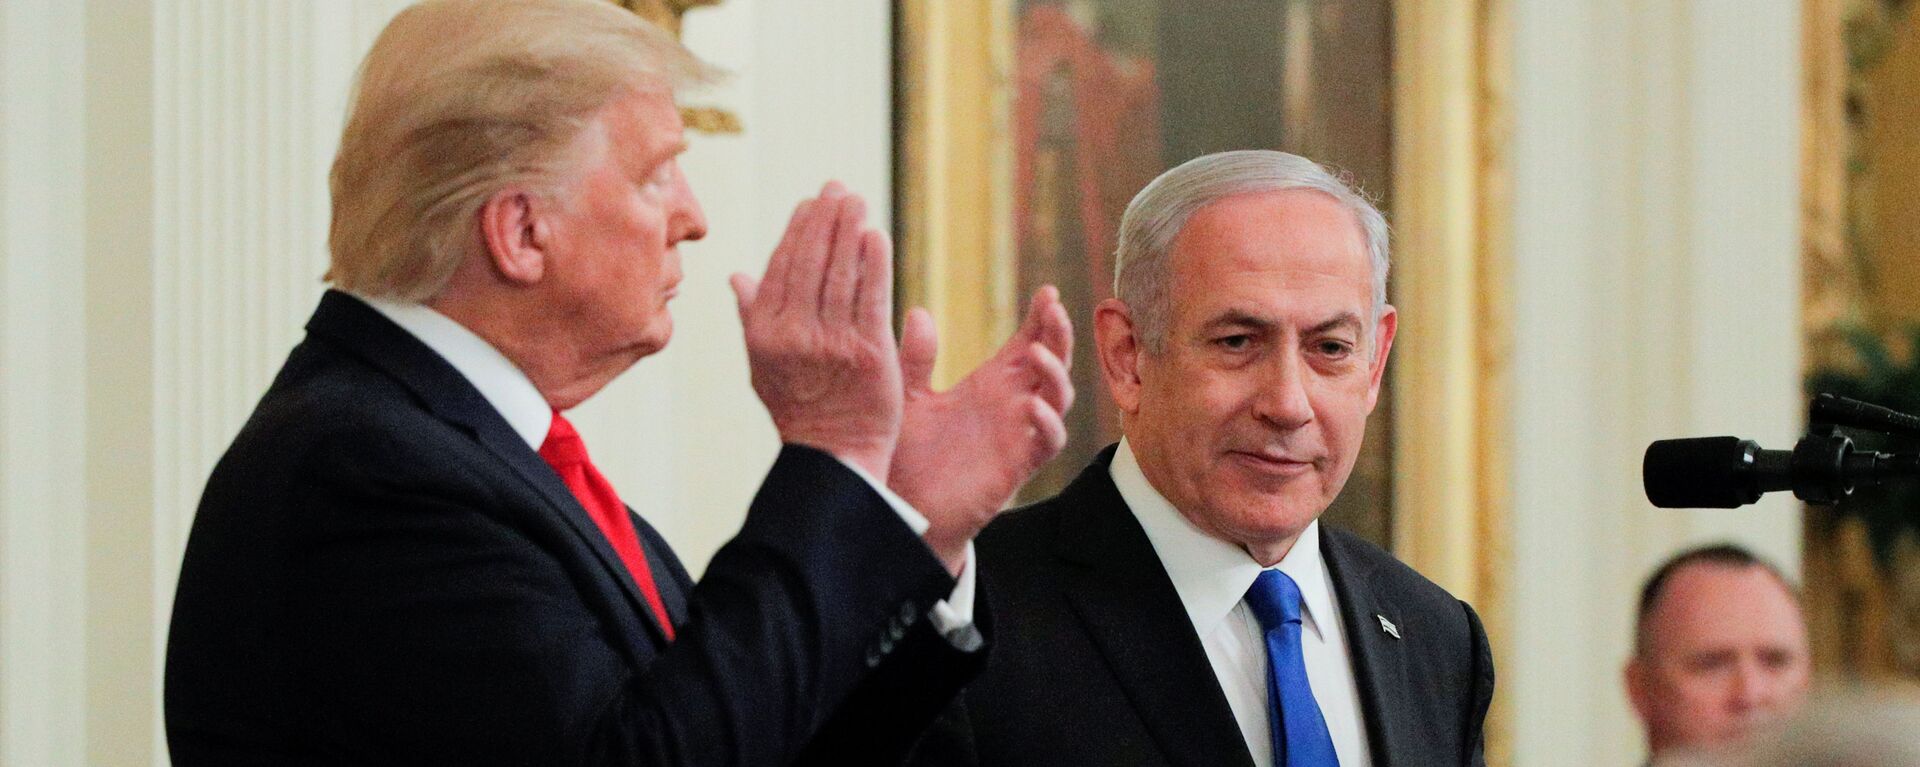 Benjamín Netanyahu, primer ministro de Israel y Donald Trump, presidente de EEUU - Sputnik Mundo, 1920, 08.09.2020